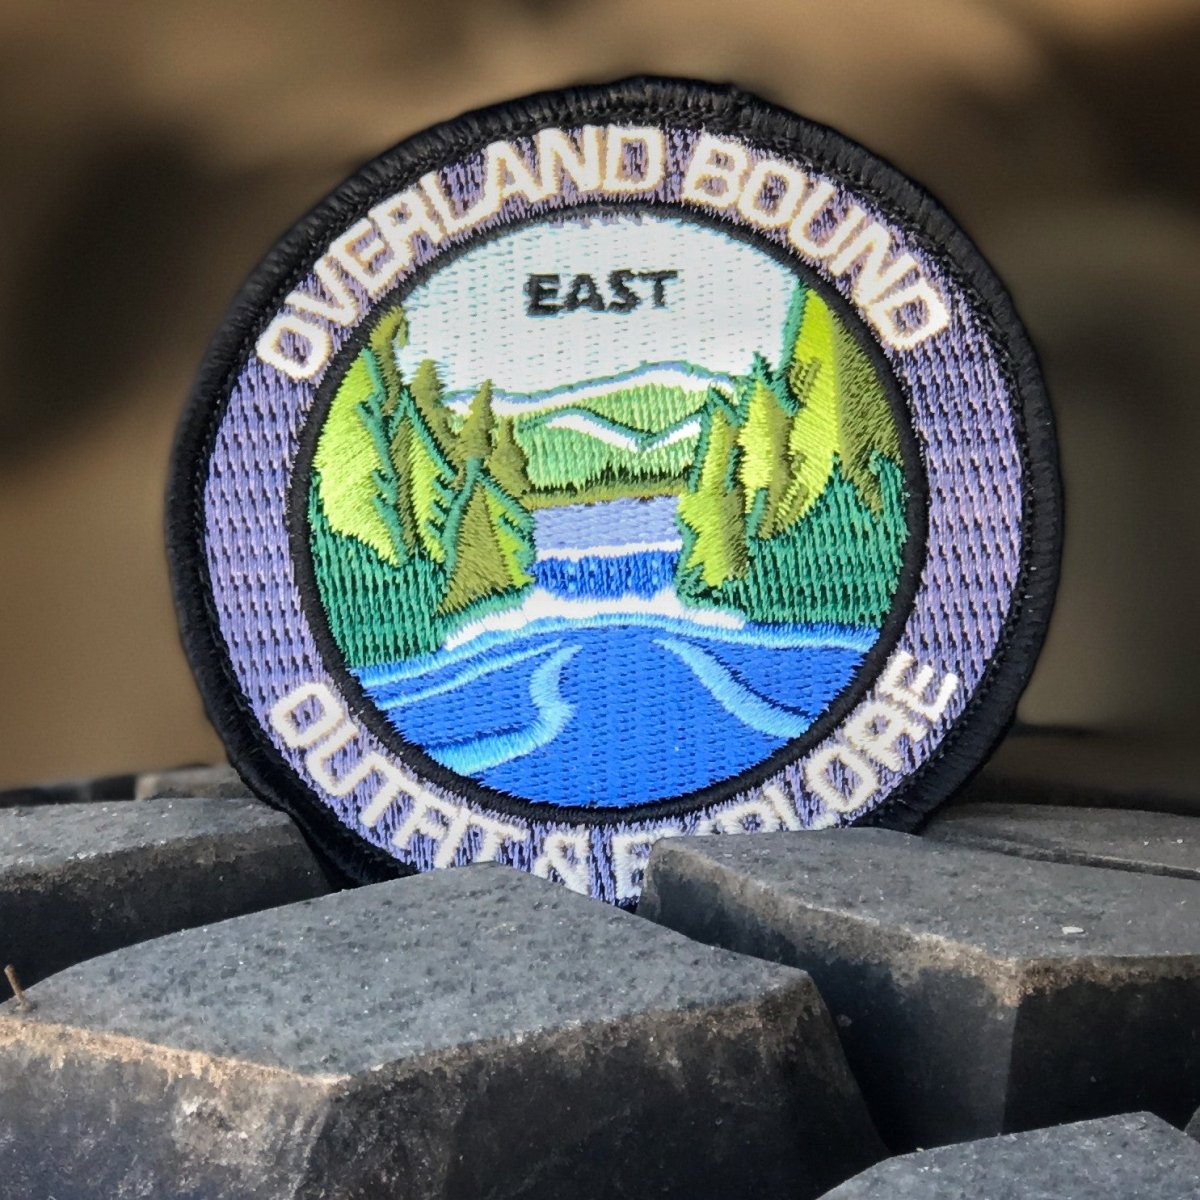 Overland Bound Regional Patches - Overland Bound